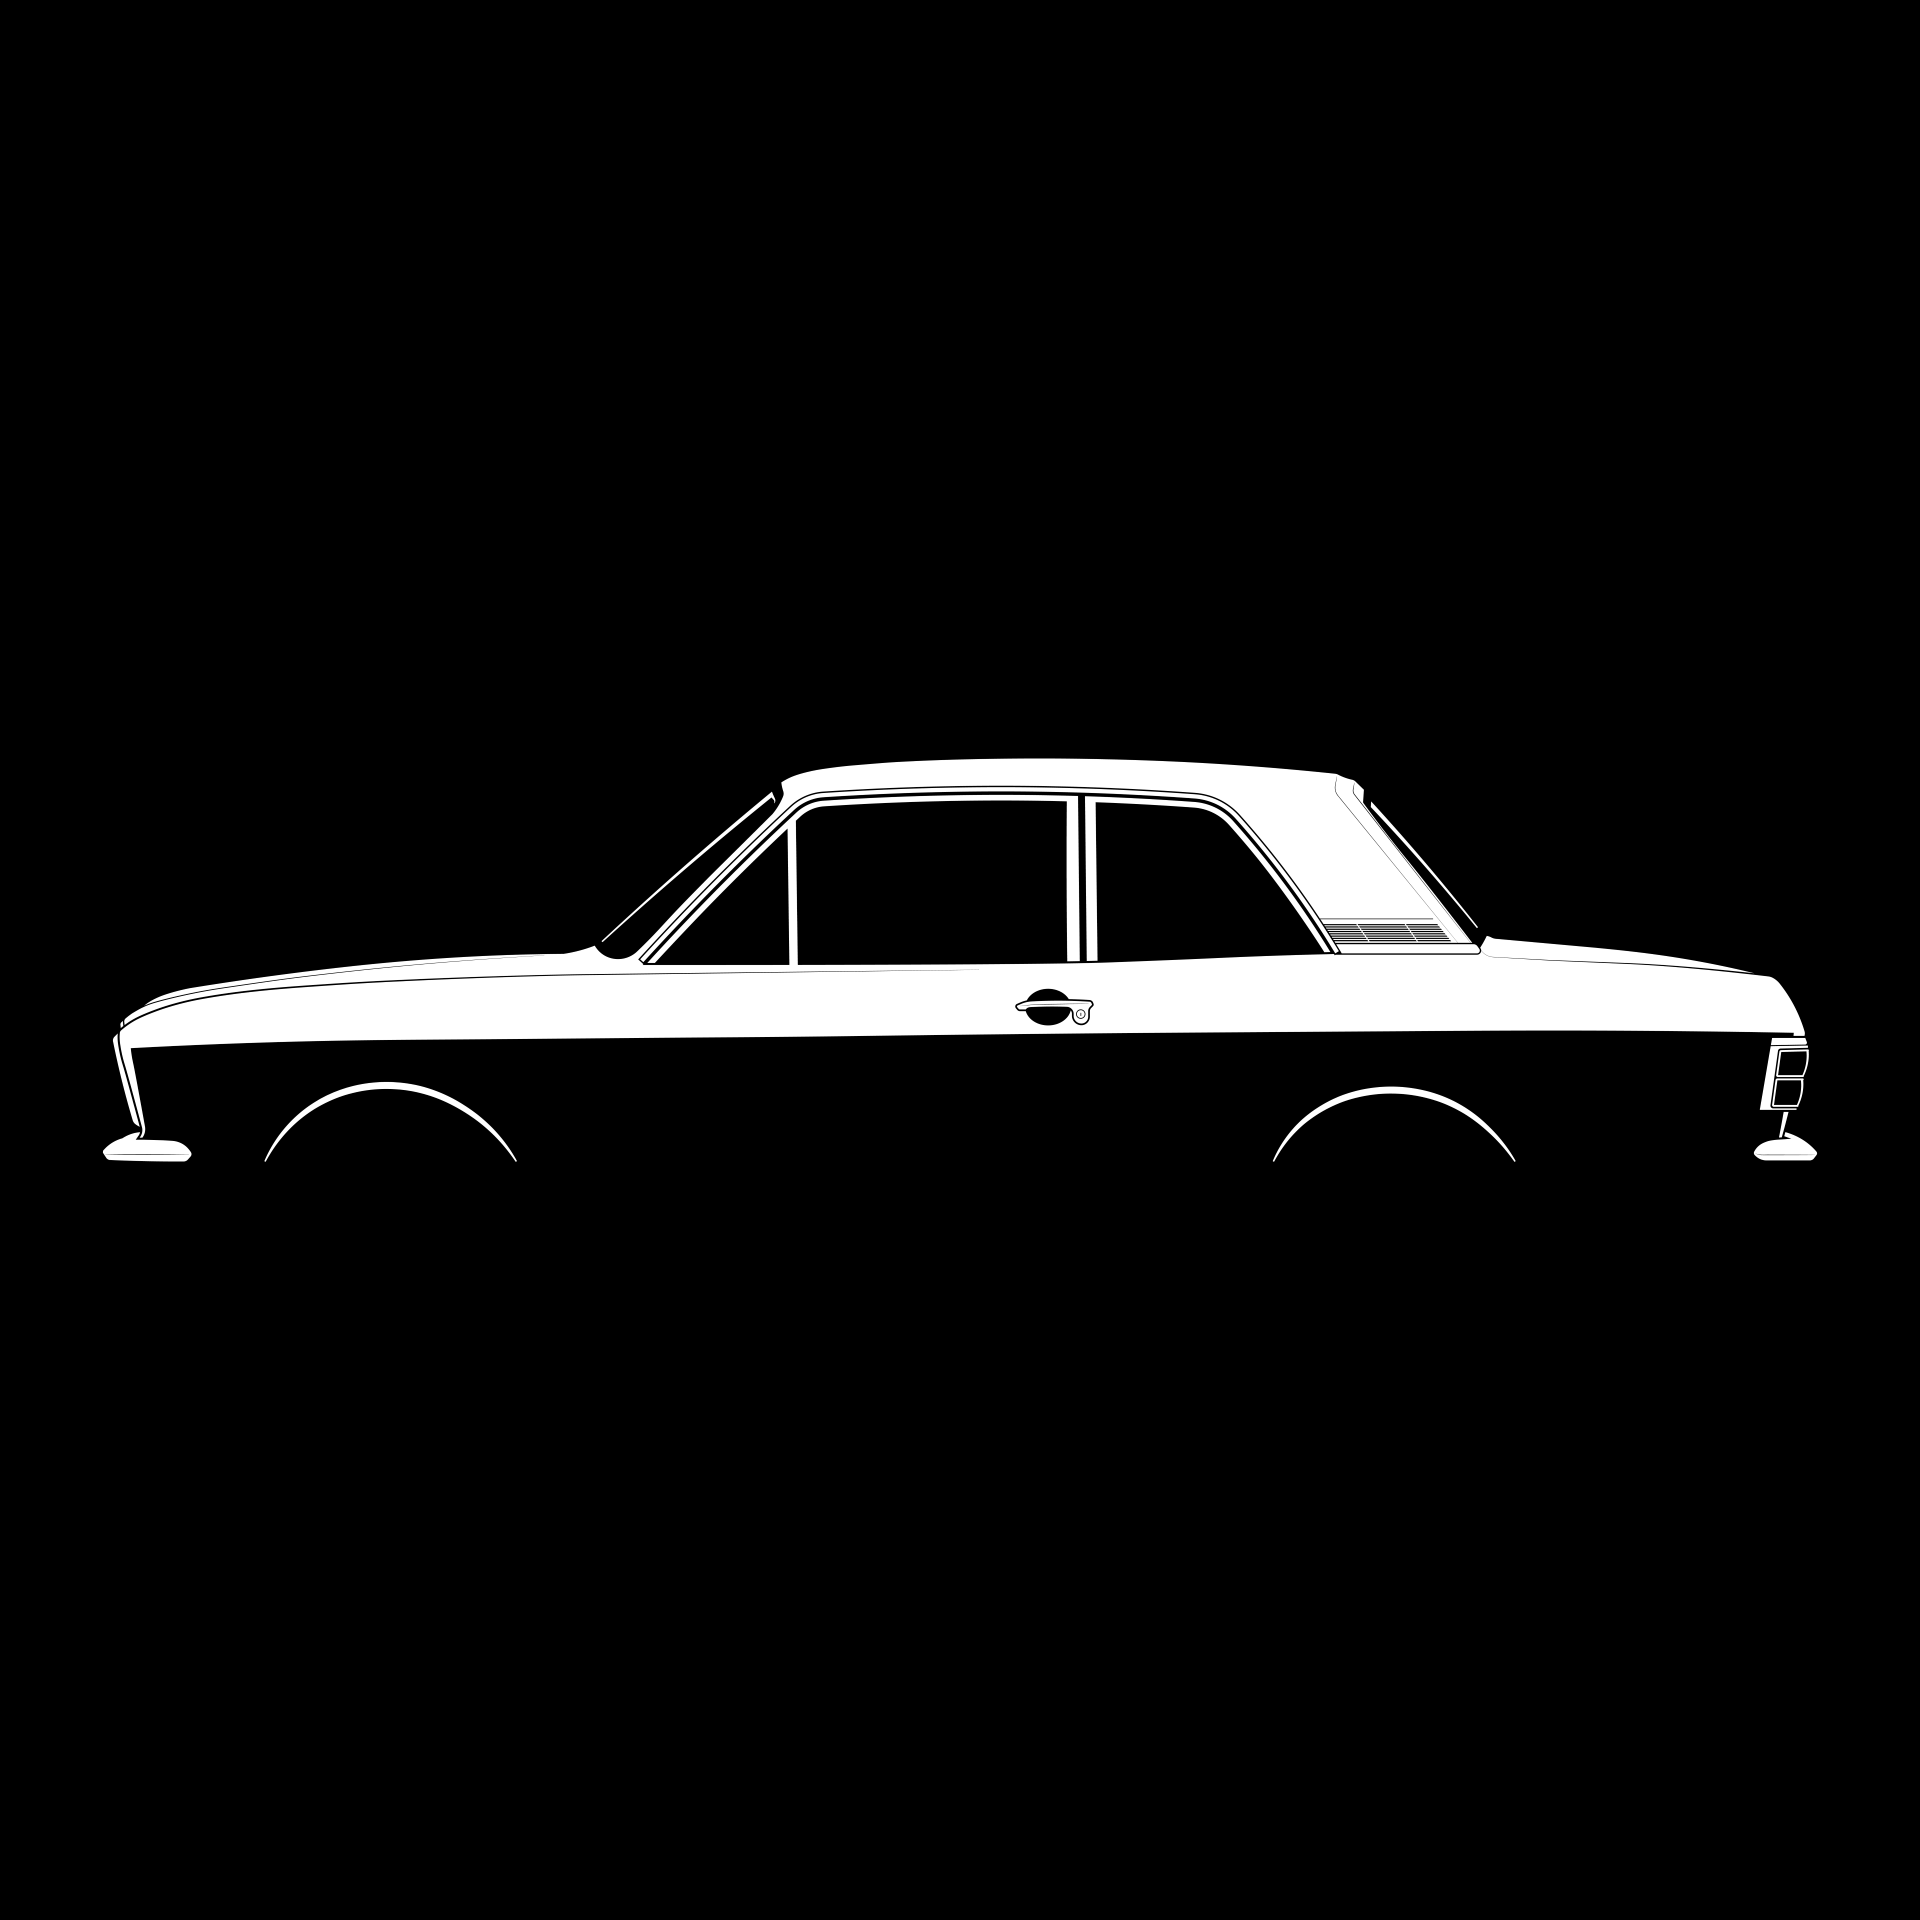 Ford Cortina Mk II